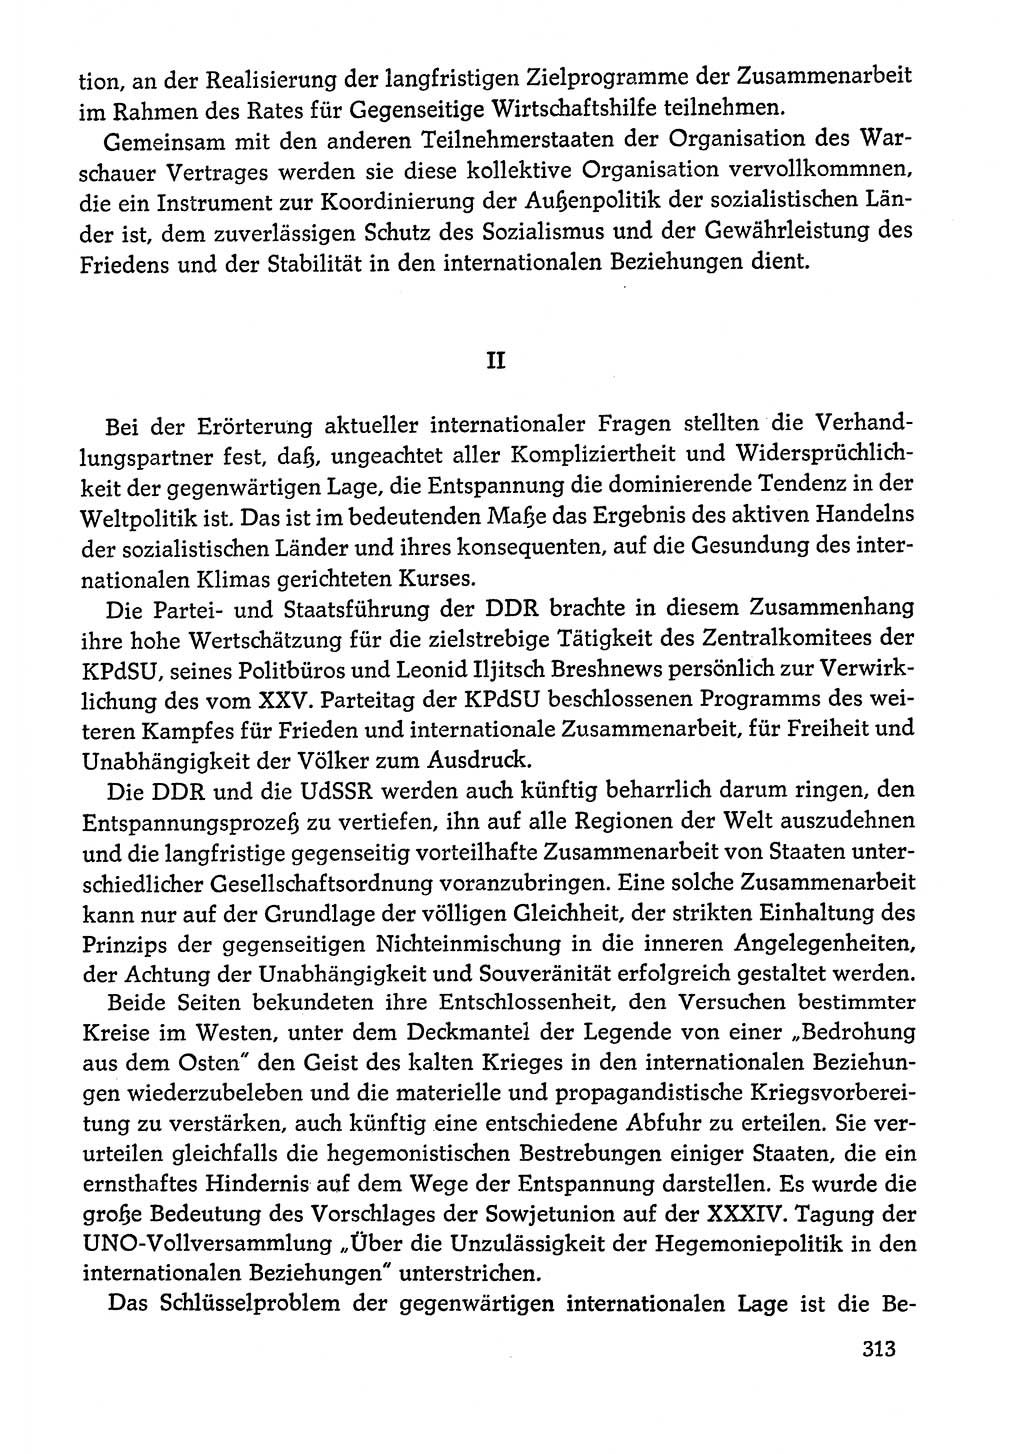 Dokumente der Sozialistischen Einheitspartei Deutschlands (SED) [Deutsche Demokratische Republik (DDR)] 1978-1979, Seite 313 (Dok. SED DDR 1978-1979, S. 313)